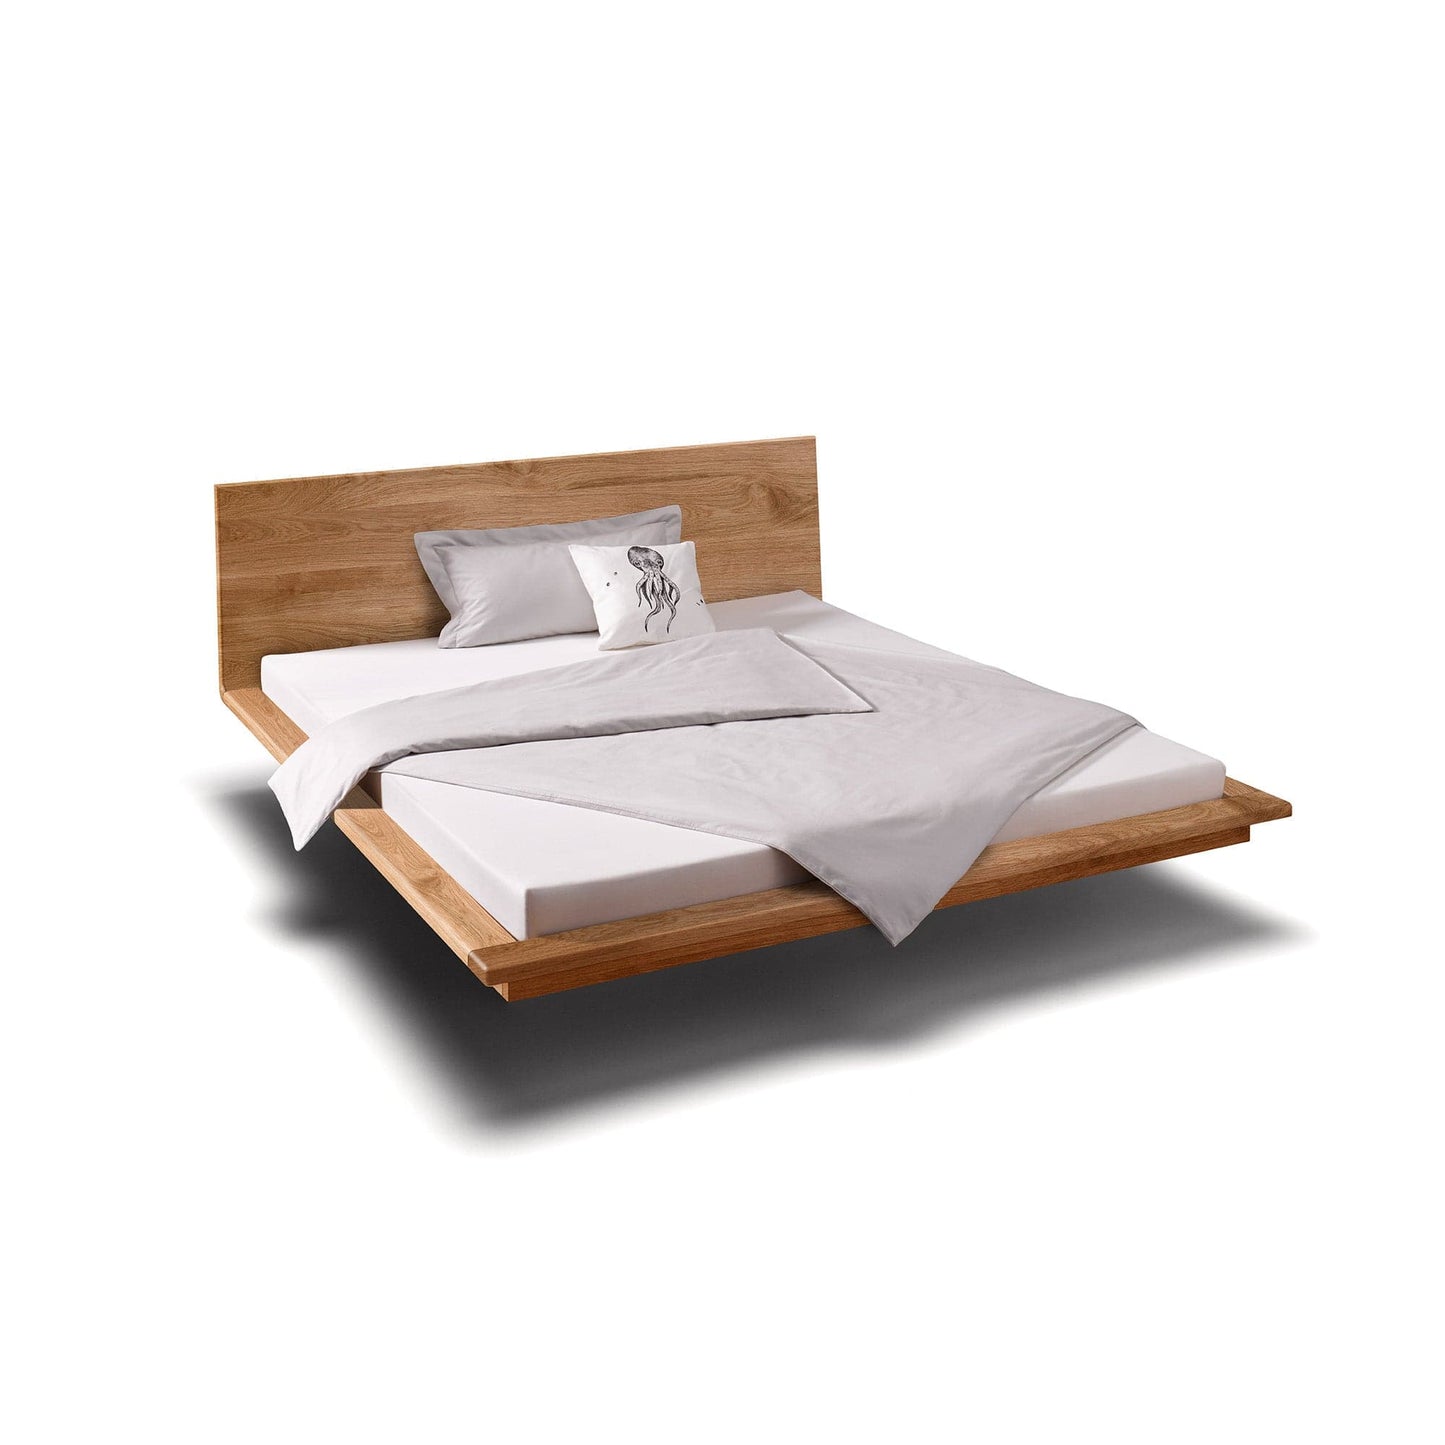 Holzmanufaktur Bett MATIS ist ein hochwertiges, schwebendes  Designerbett.